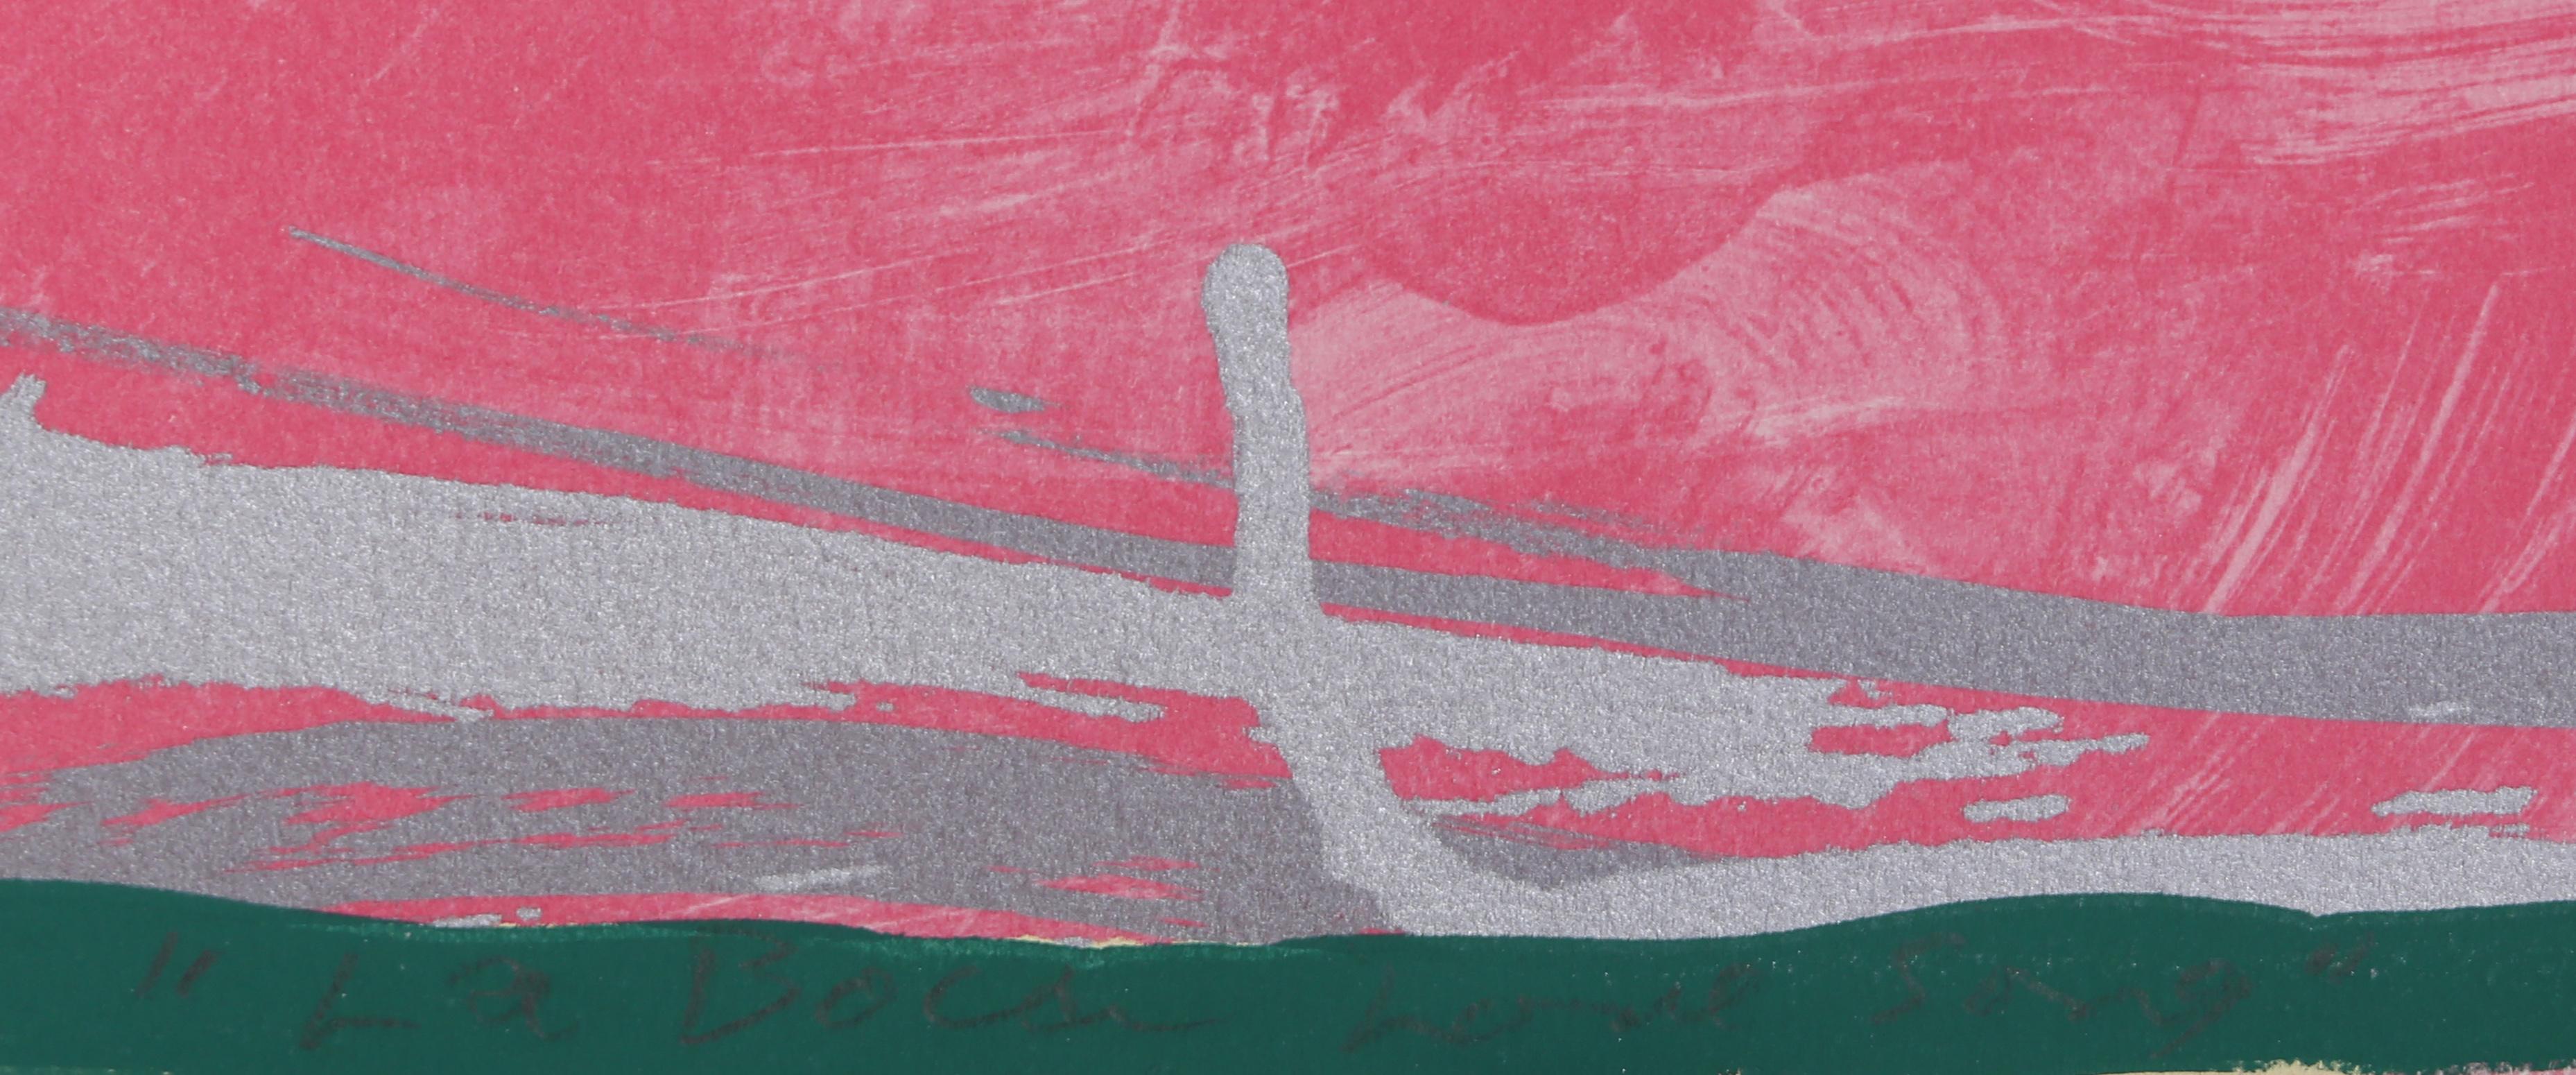 La Boca Love Song - Pink Abstract Print by Jules Olitski